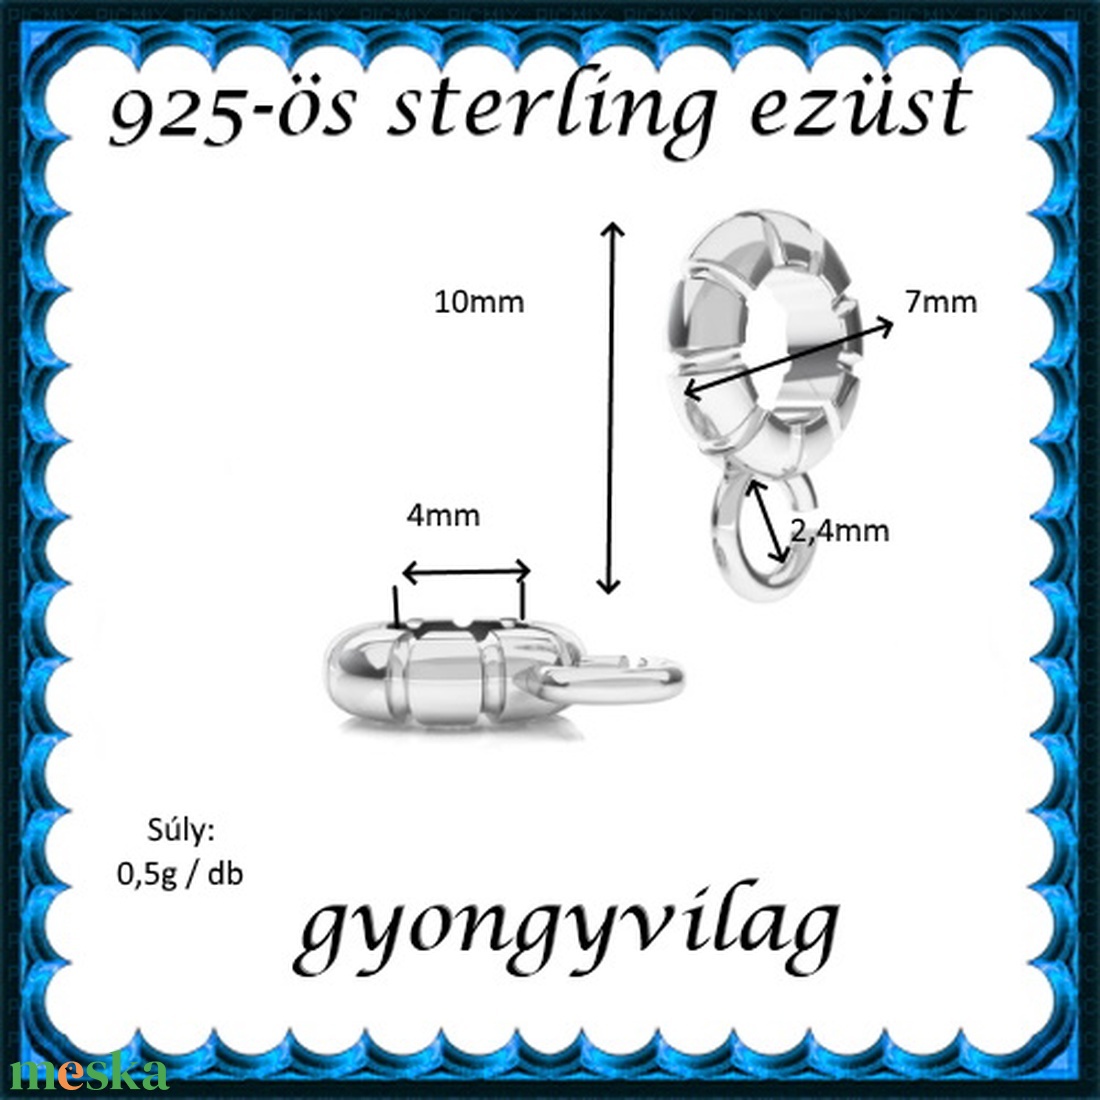 925-ös sterling ezüst ékszerkellék: medáltartó, medálkapocs EMT 35 - gyöngy, ékszerkellék - egyéb alkatrész - Meska.hu